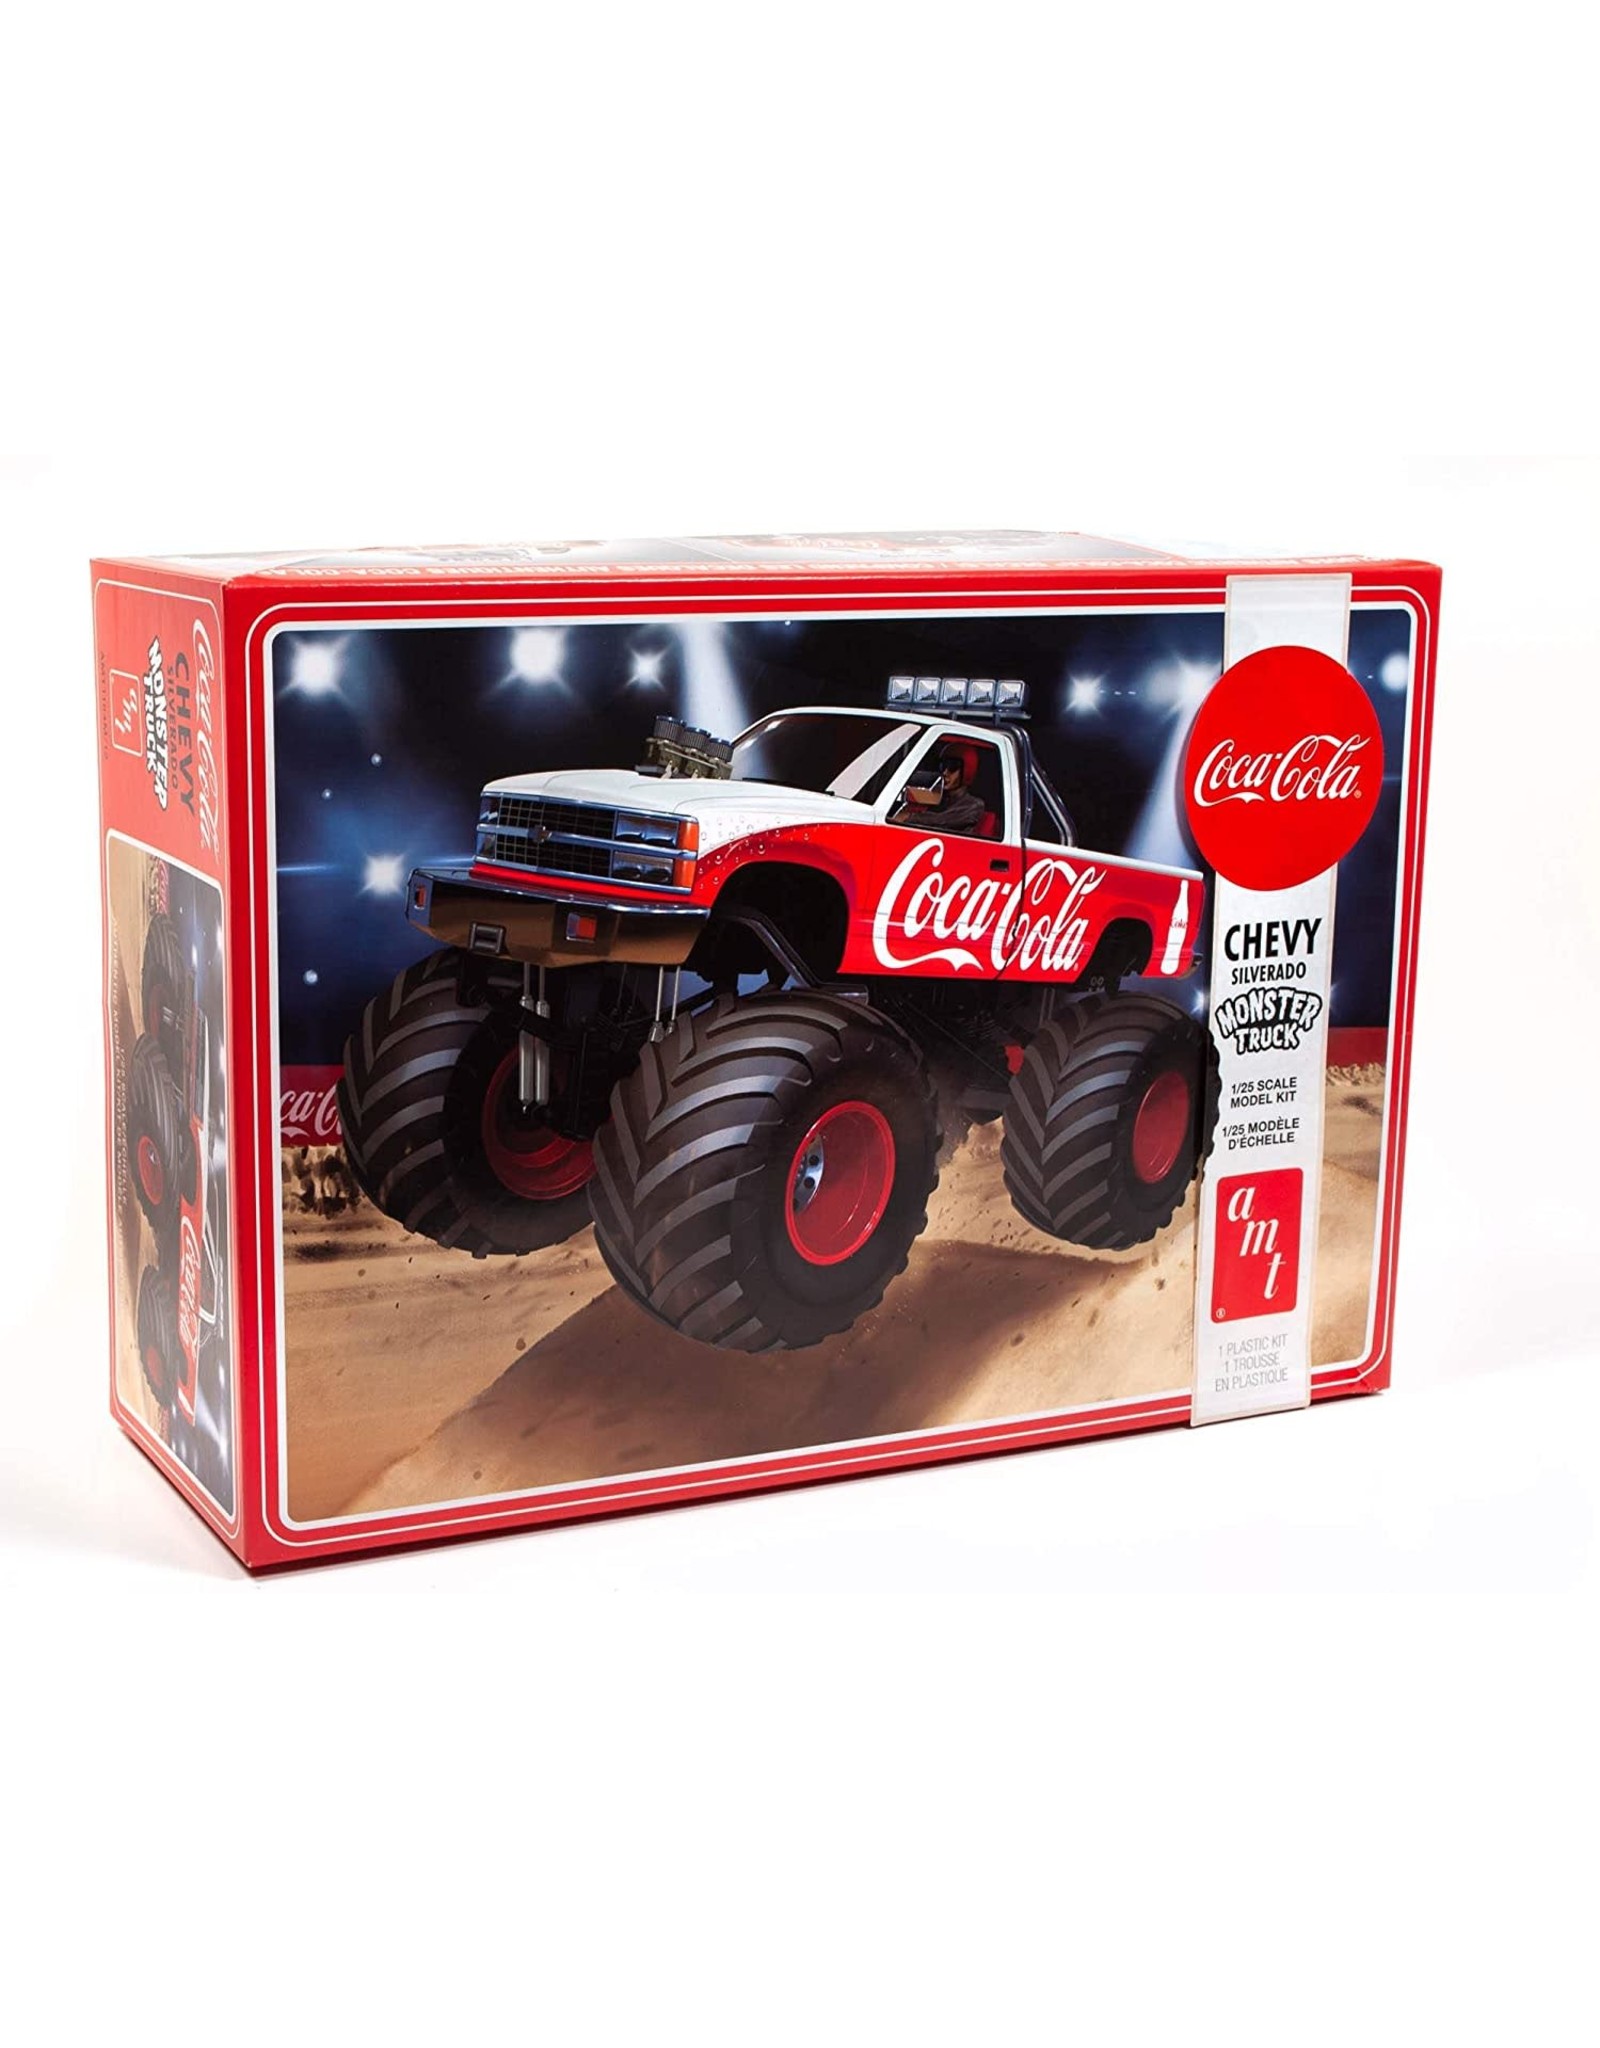 amt Coca-Cola - Chevy silverado Monster truck